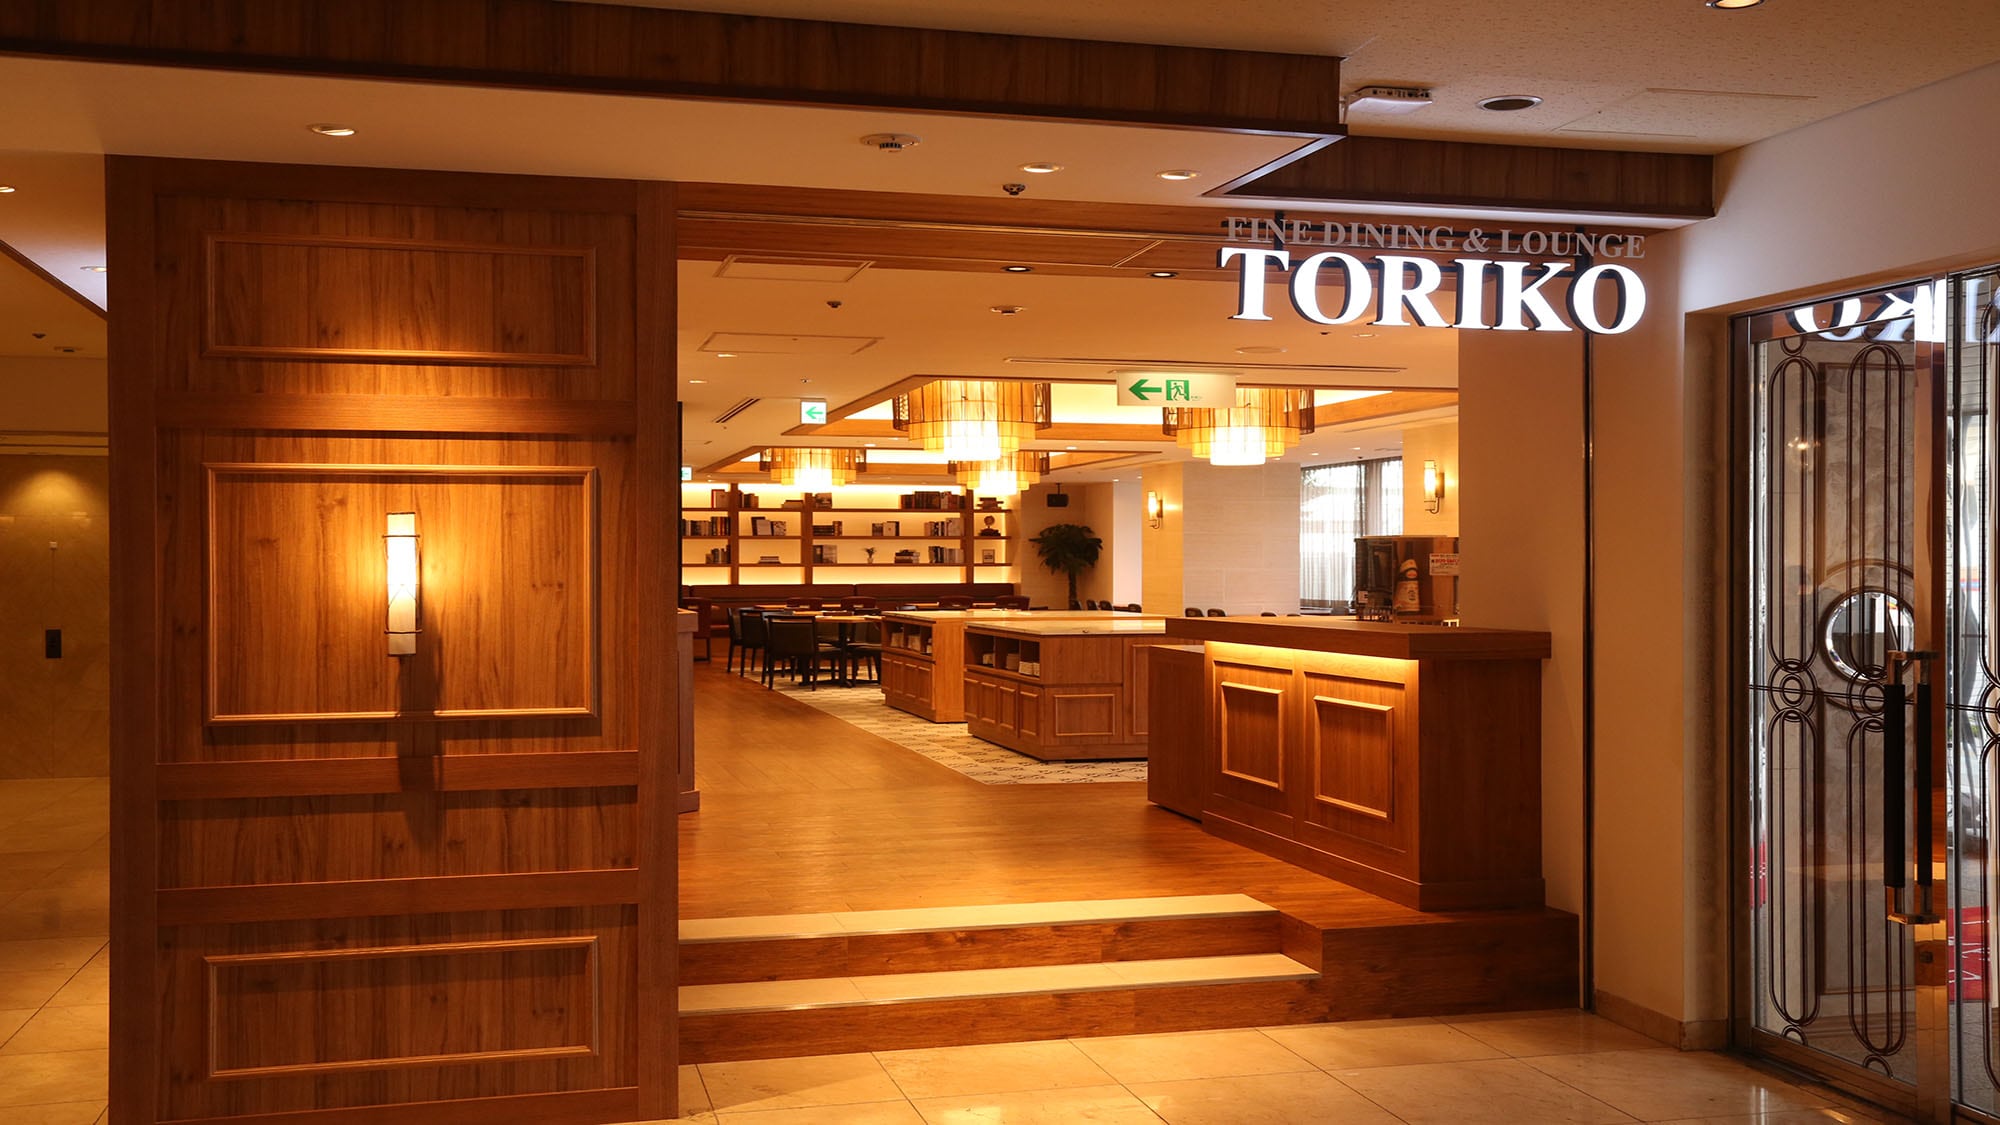 TORIKO (entrance)